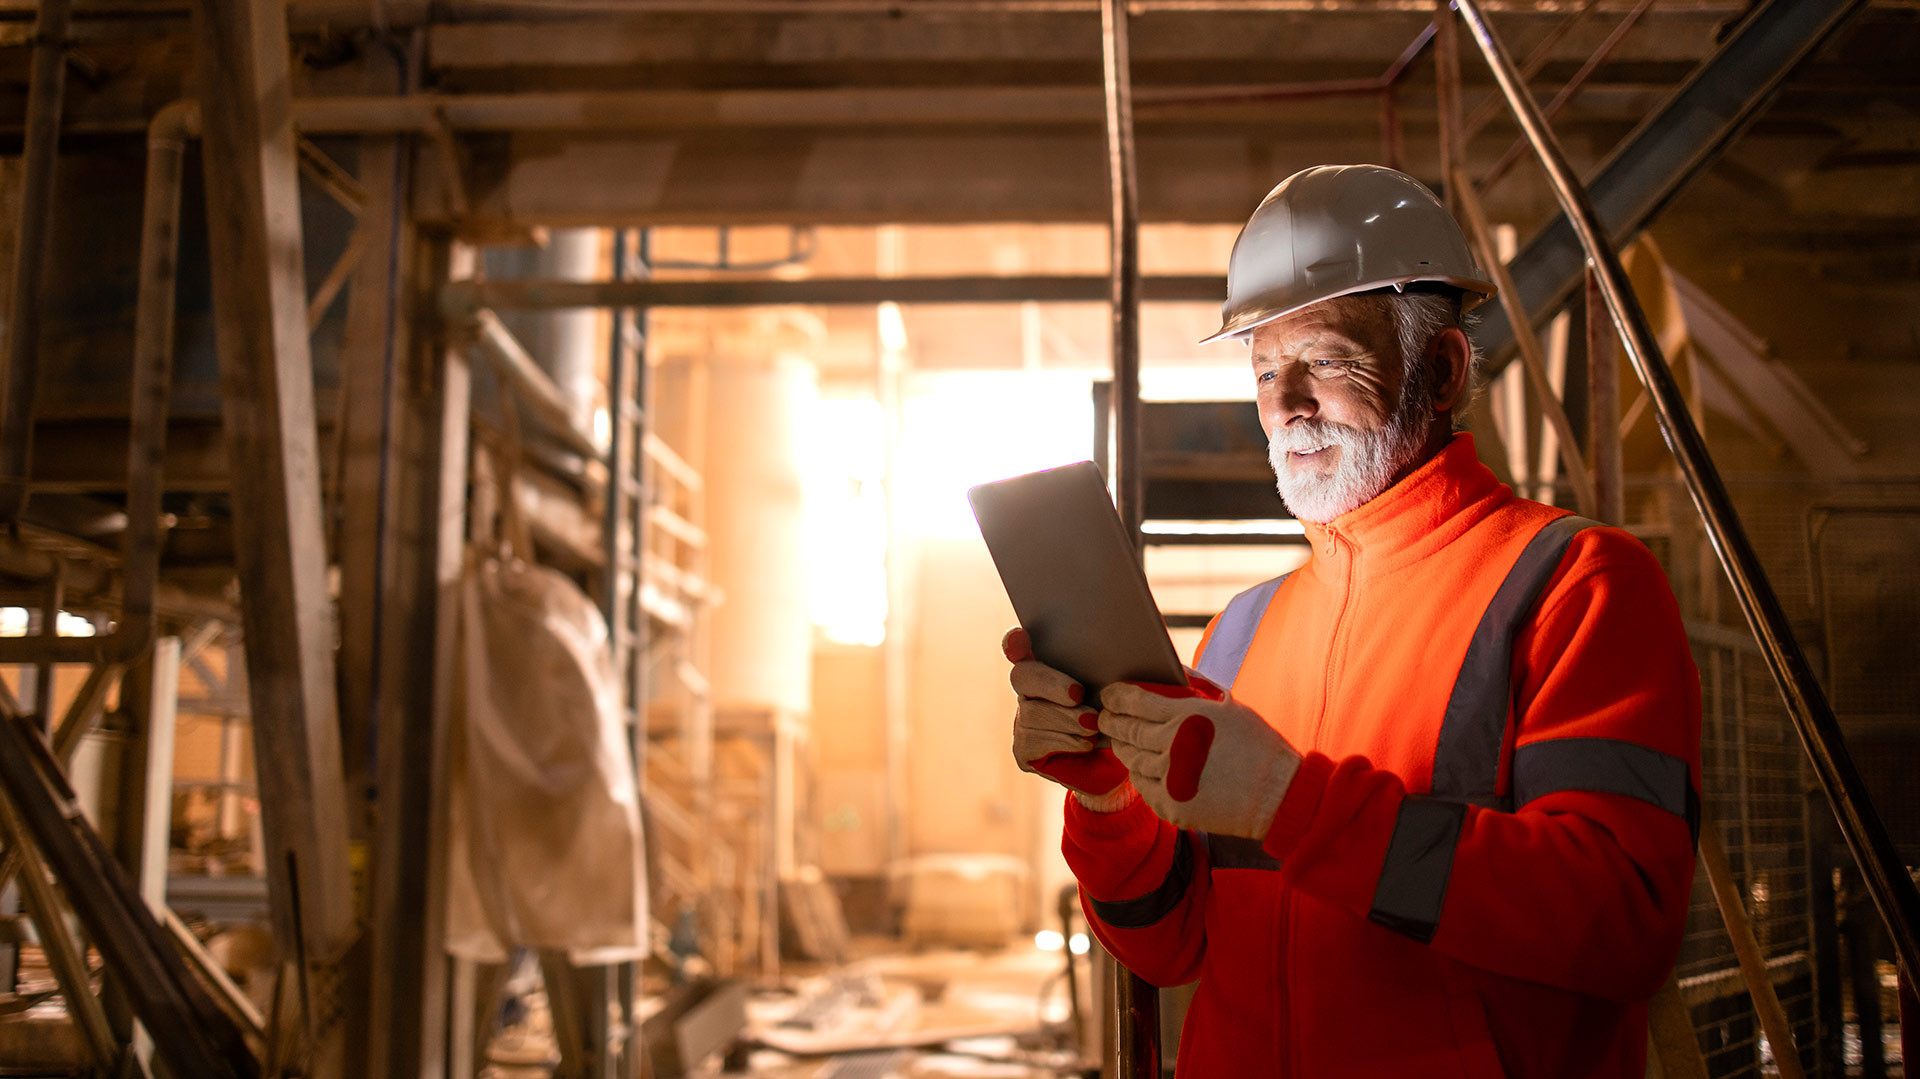 Bild: Mann in Schutzkleidung liest auf dem Tablet in Fabrikhalle